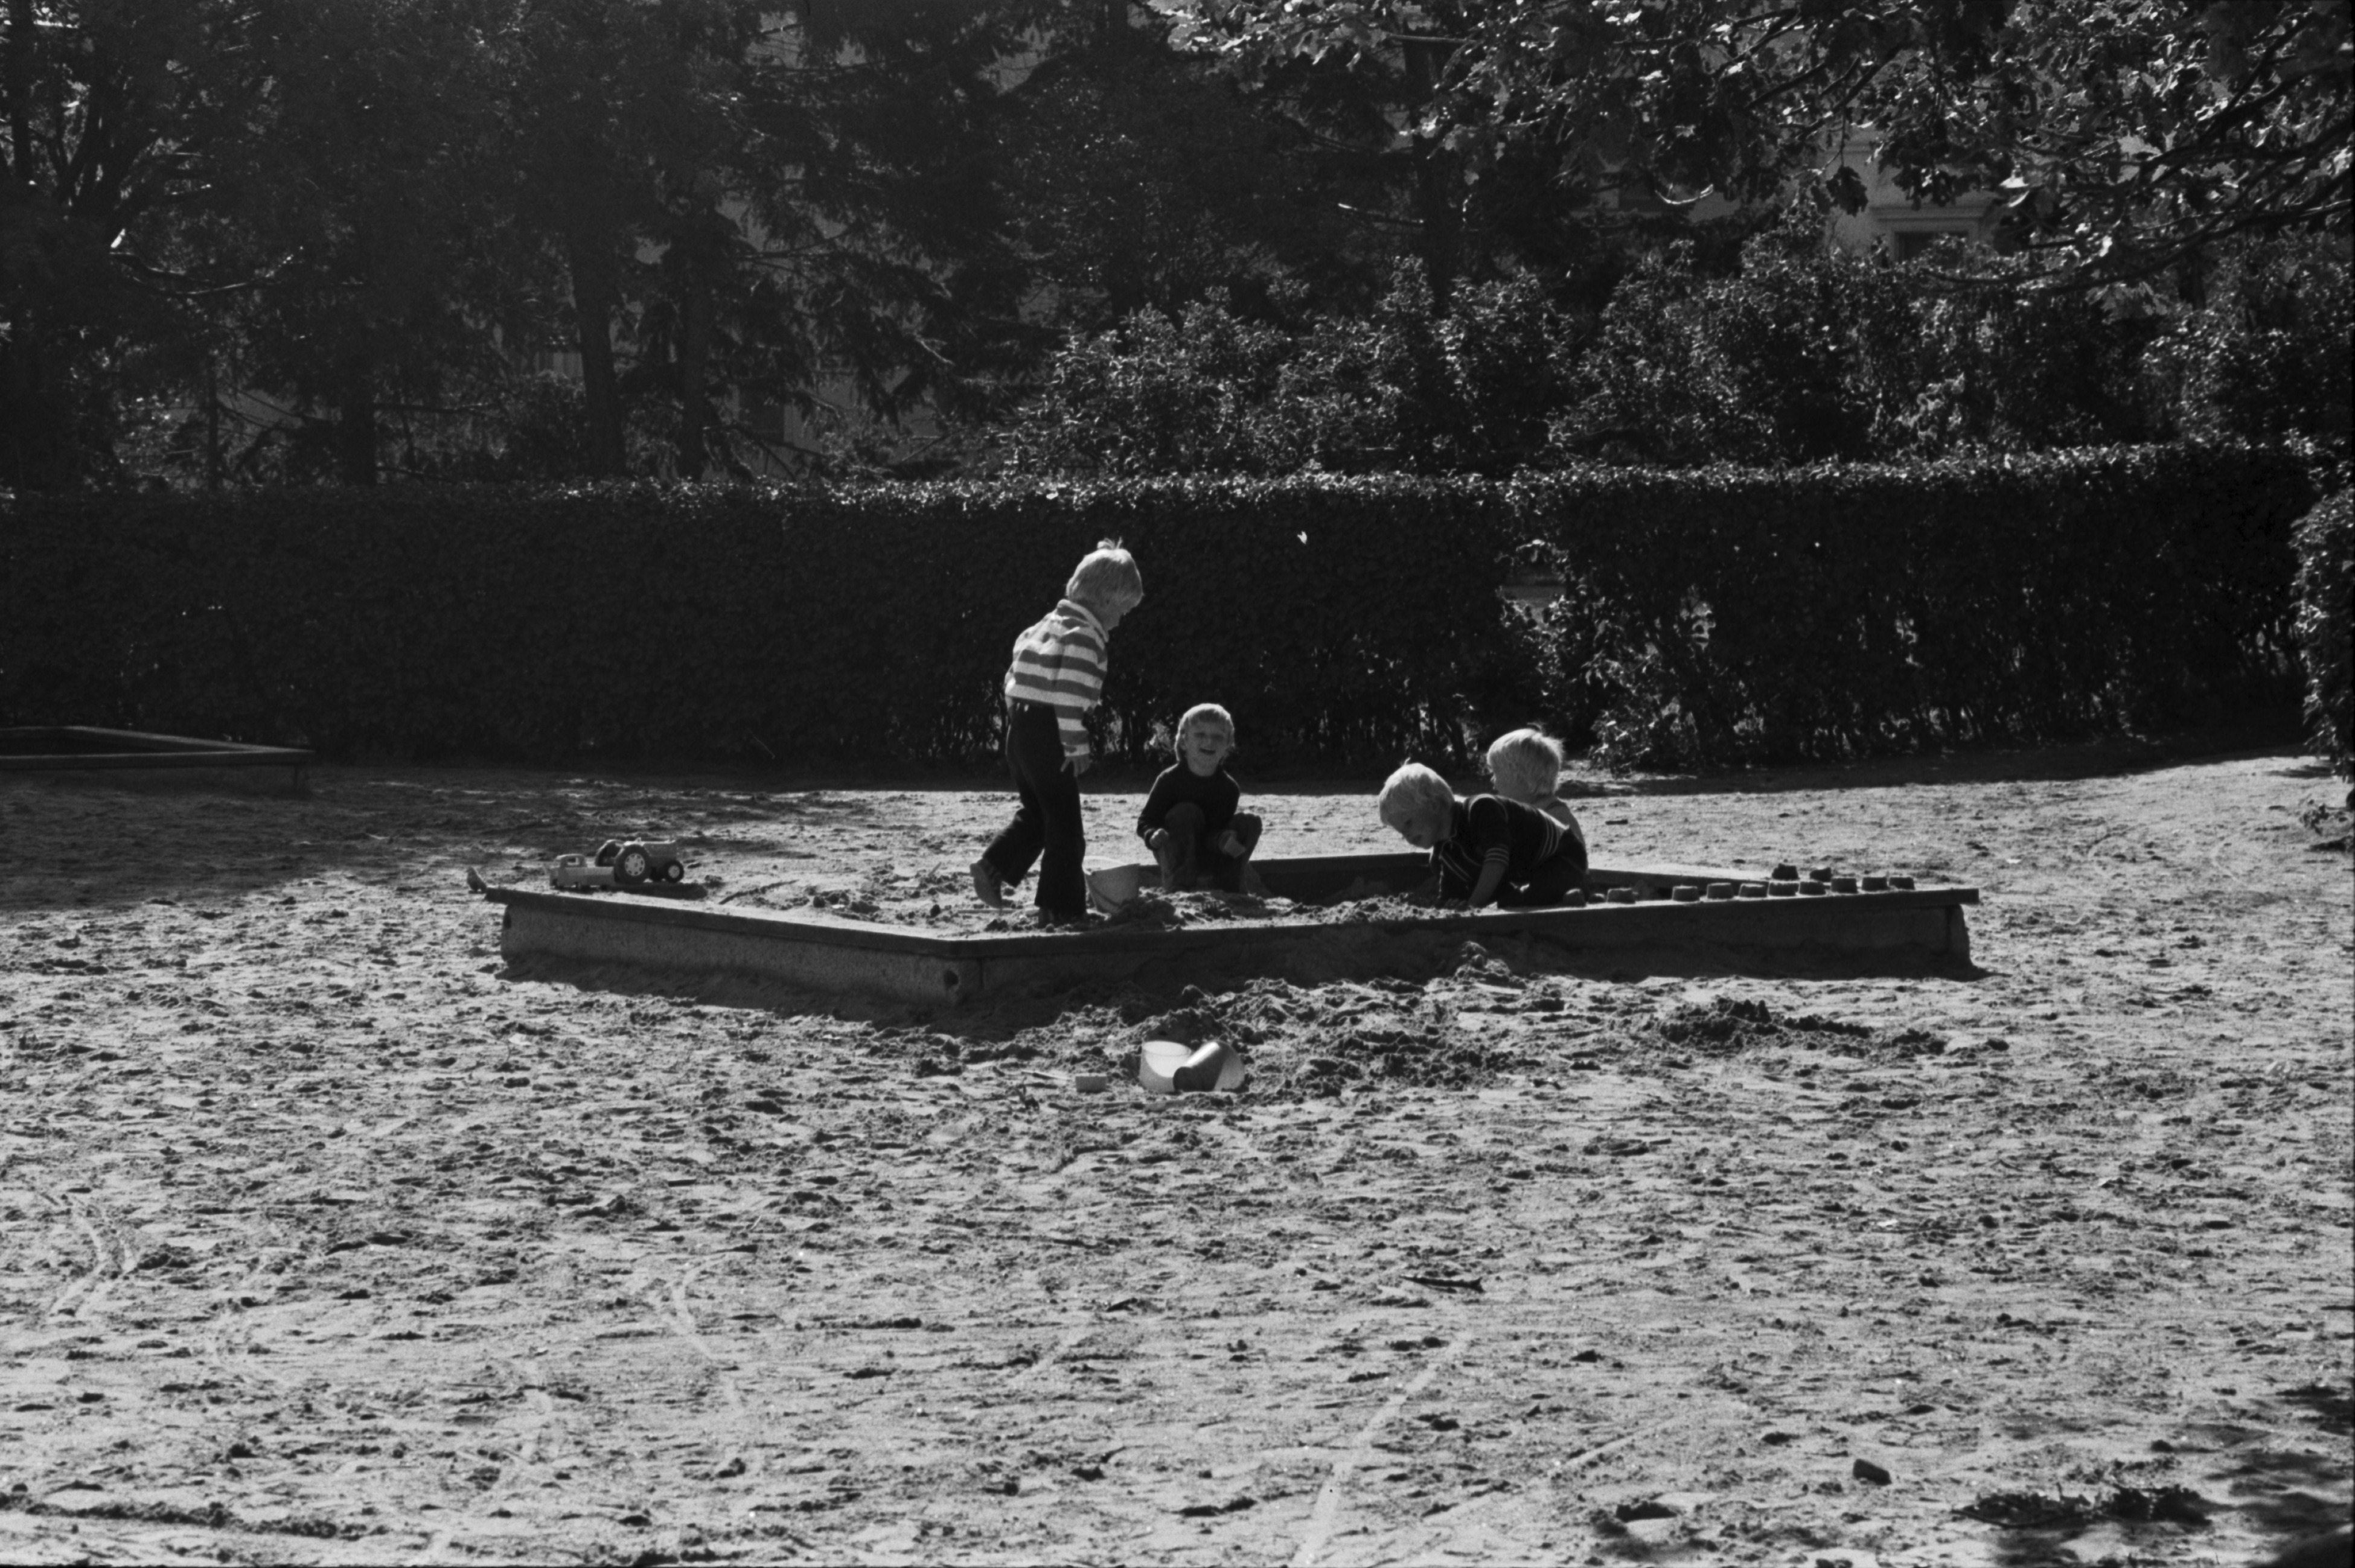 Tehtaanpuisto. Lapsia leikkimässä hiekkalaatikossa Tehtaanpuiston leikkipaikalla.